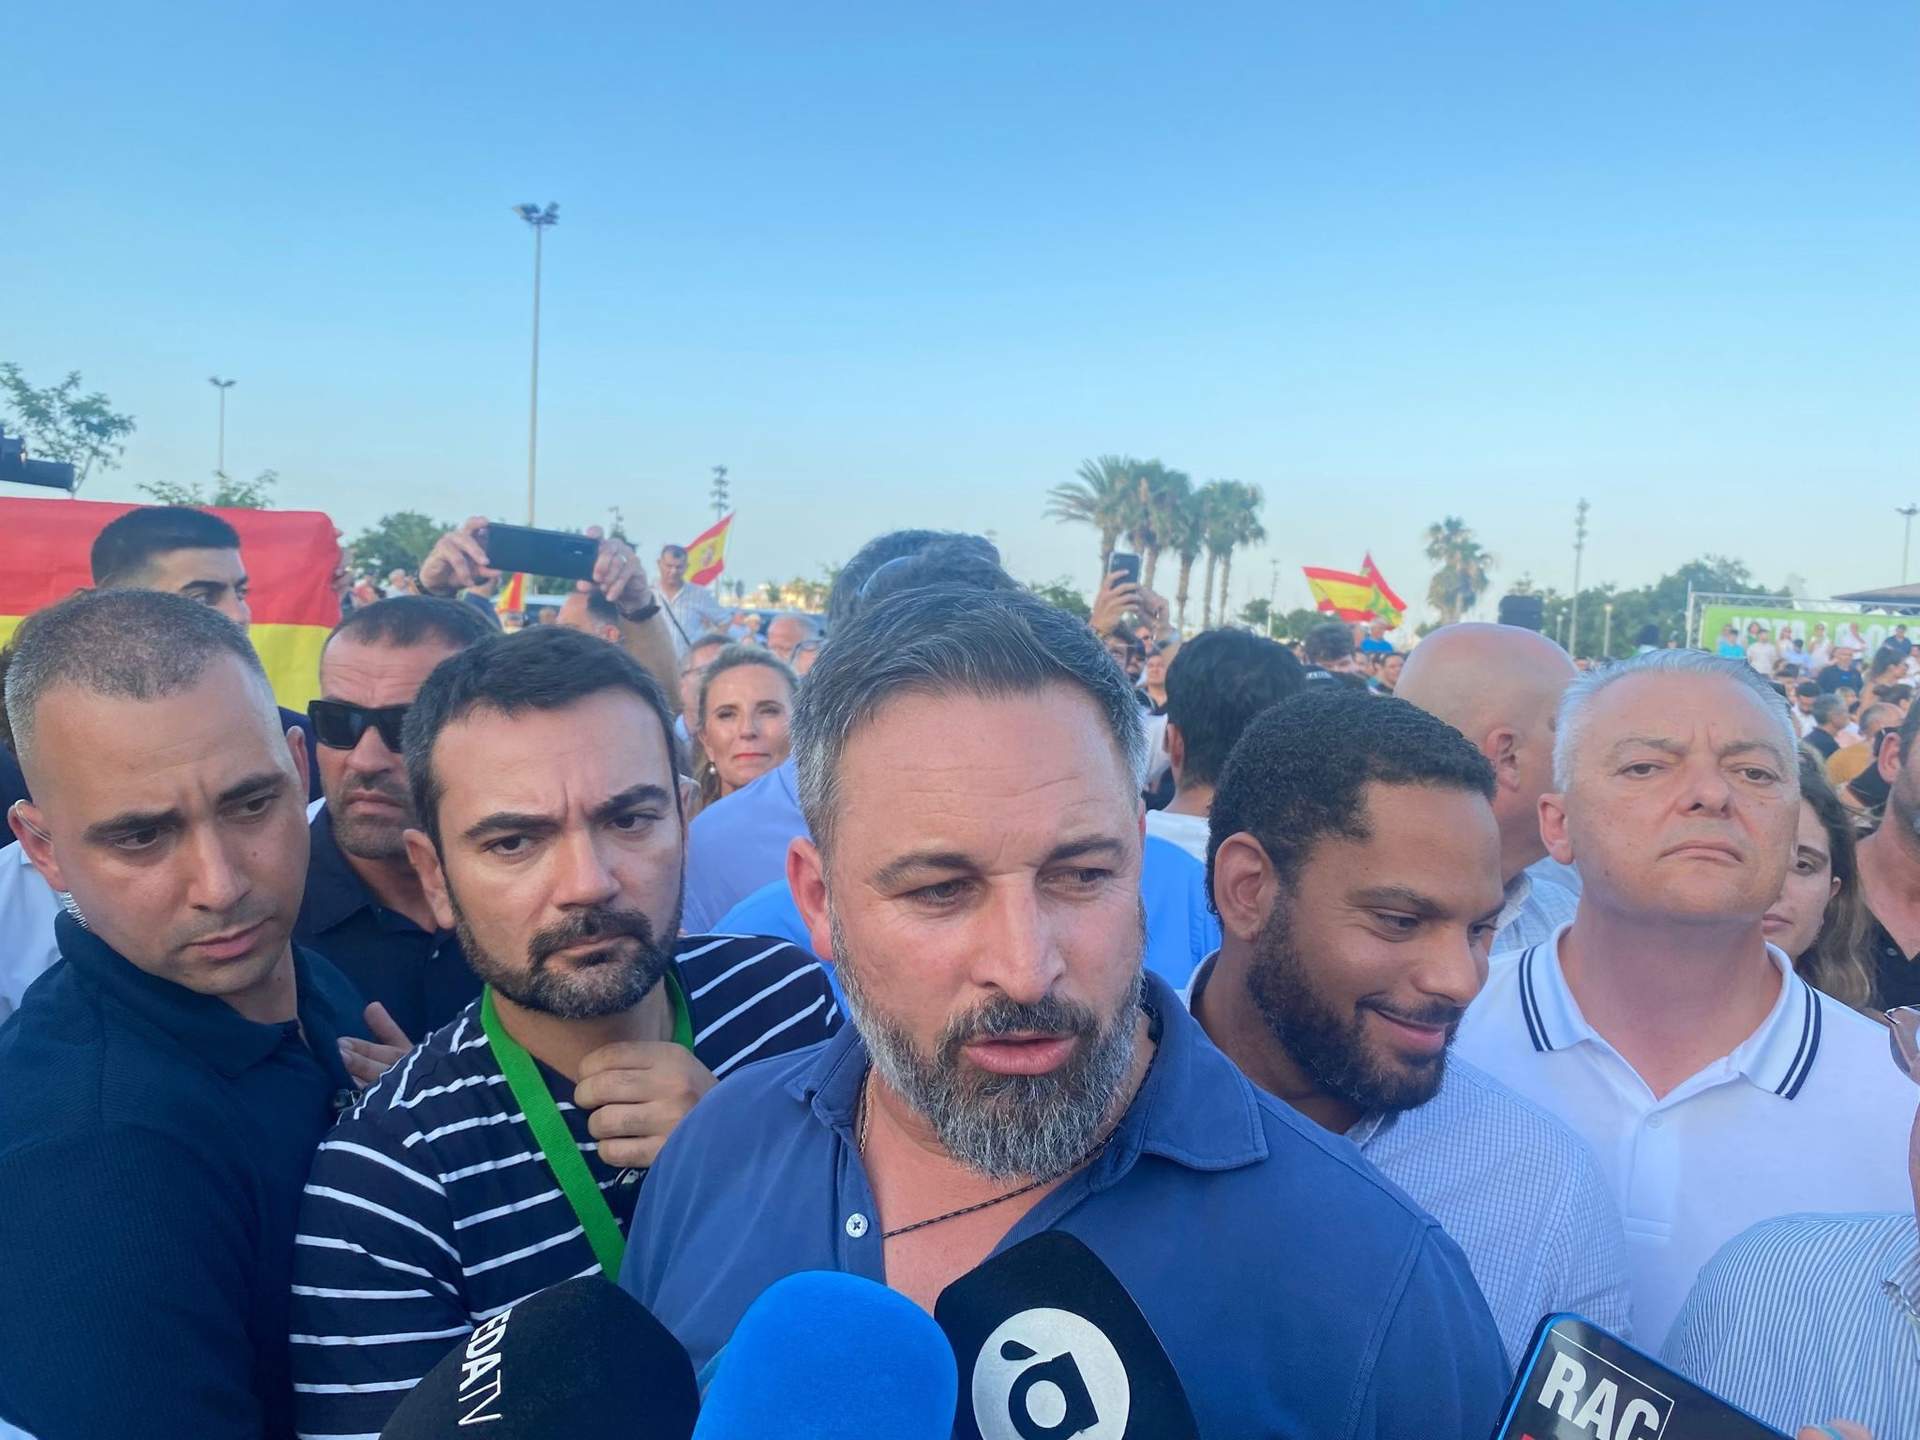 Cargar máis
El líder de Vox, Santiago Abascal, atiende a los medios antes de participar en un acto en València.